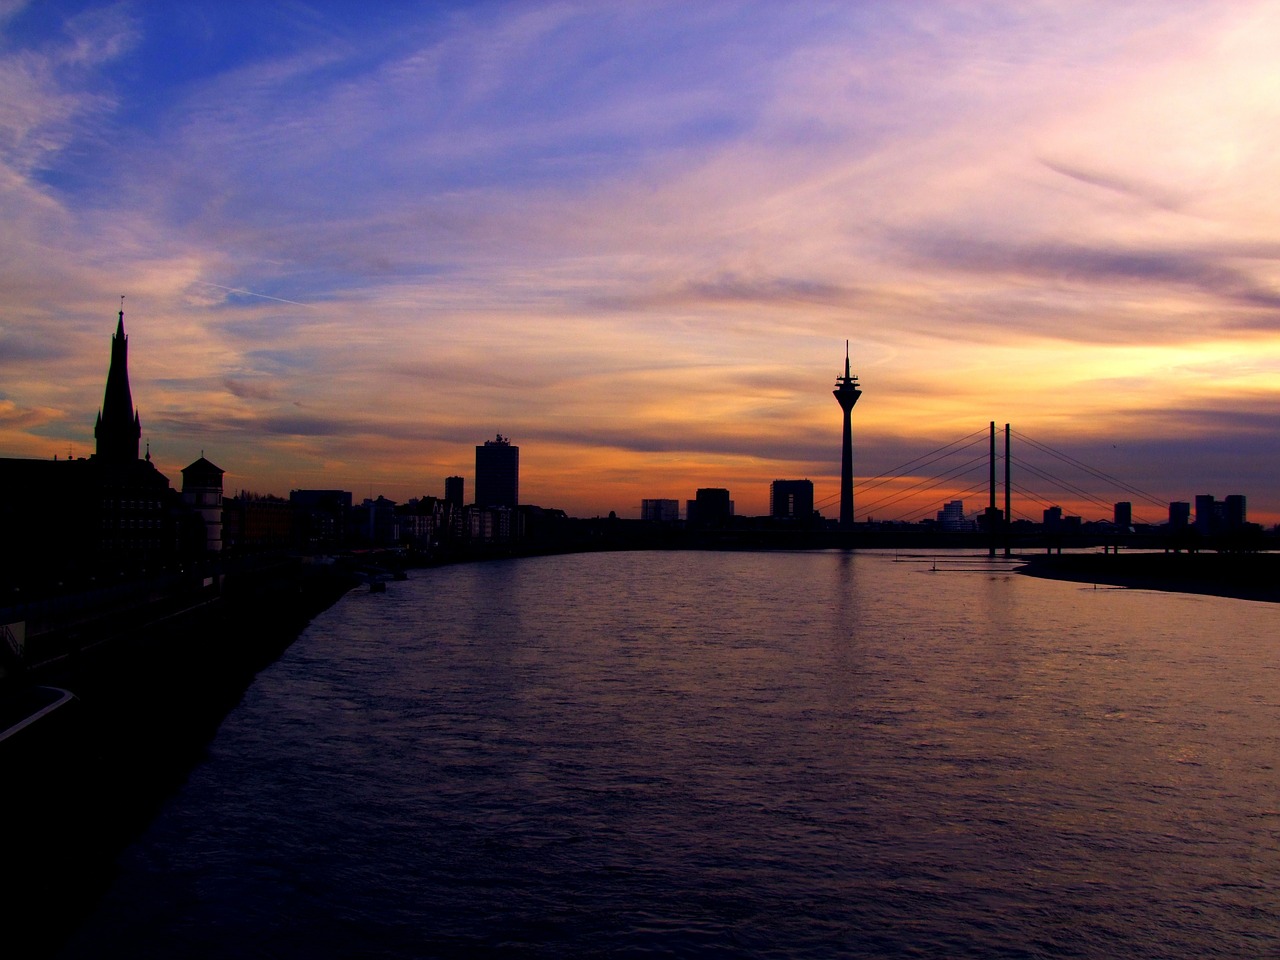 niederrhein evening sunset free photo